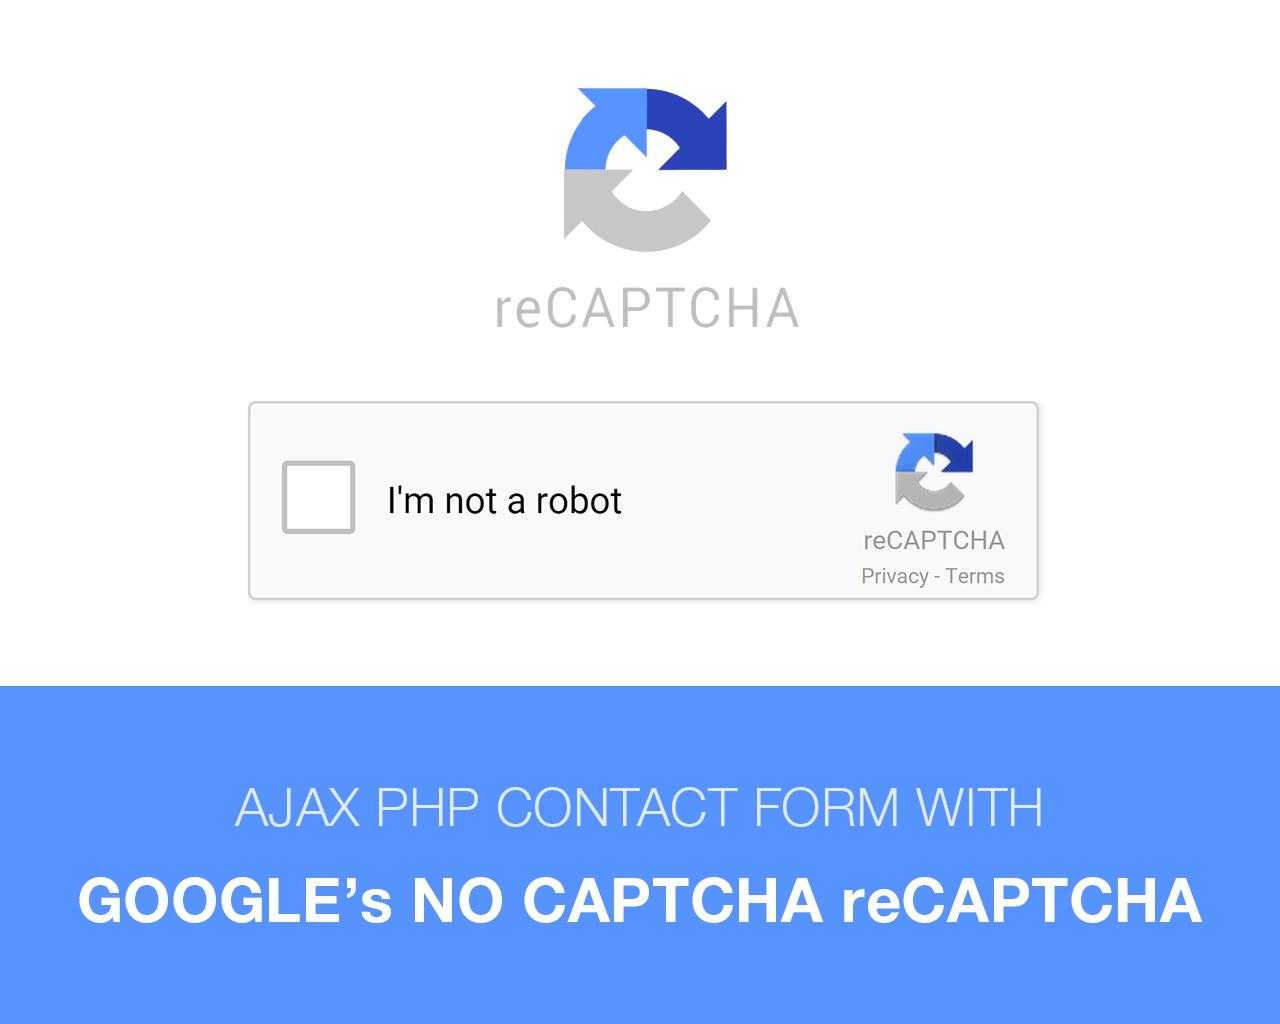 Капча что это такое простыми. Рекапча гугл. Капча RECAPTCHA. Капча с изображениями. RECAPTCHA Я не робот.